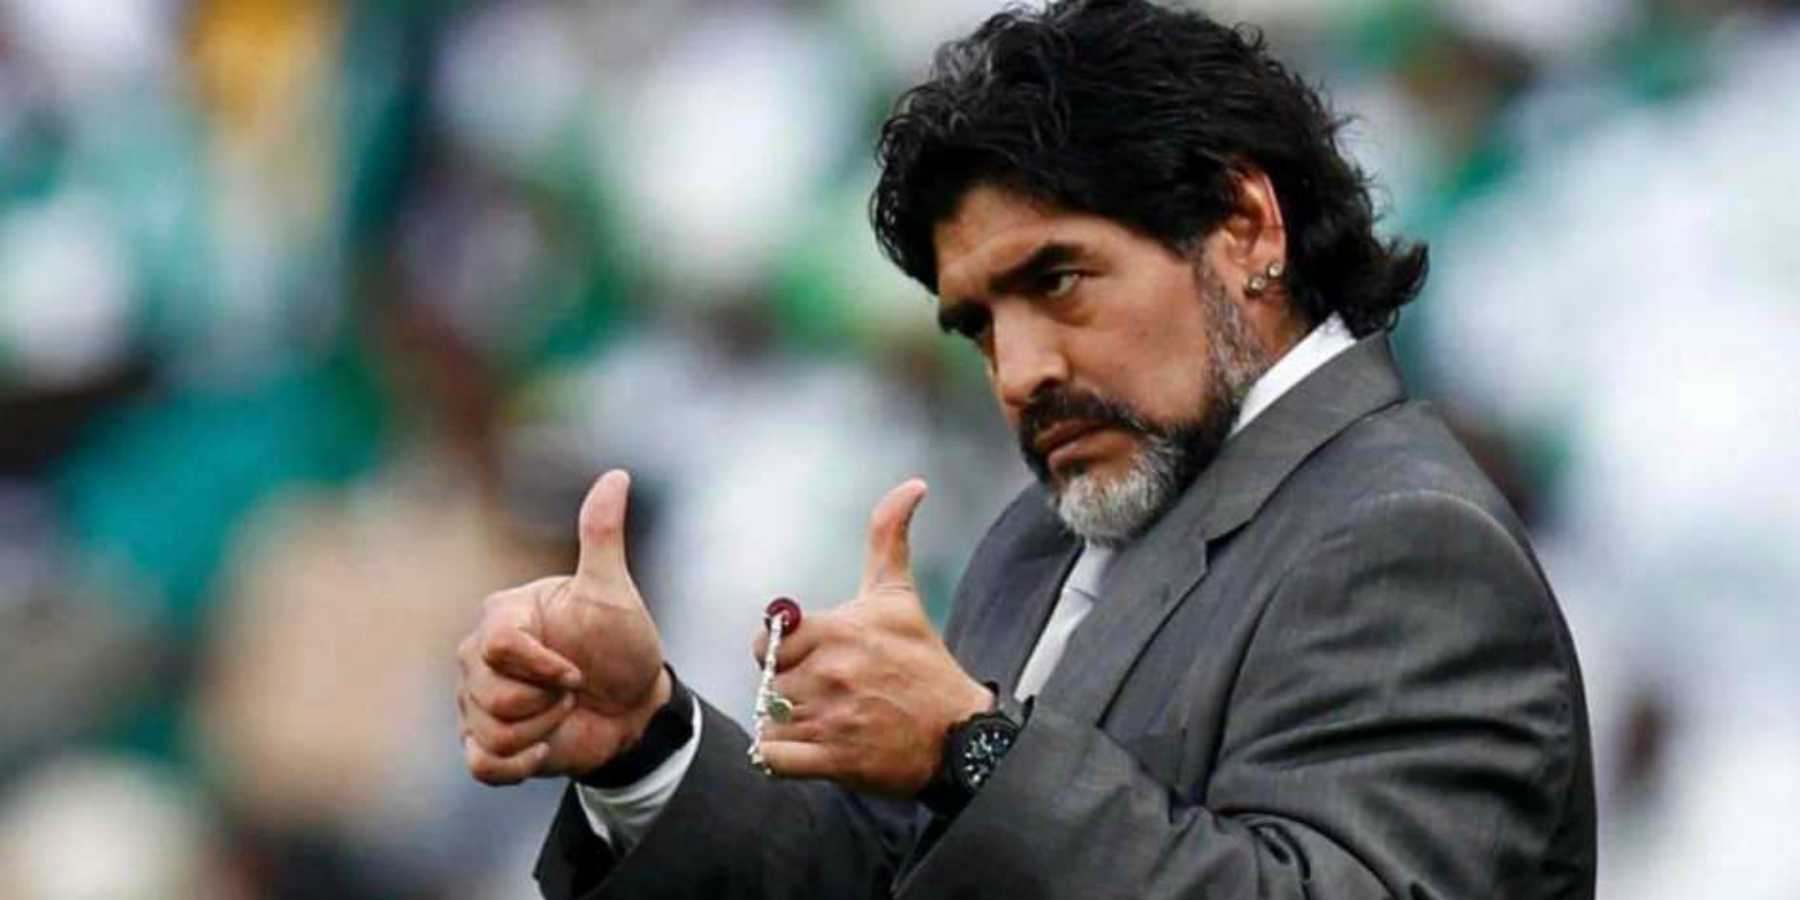 Maradona emprende acciones legales contra FIFA 18